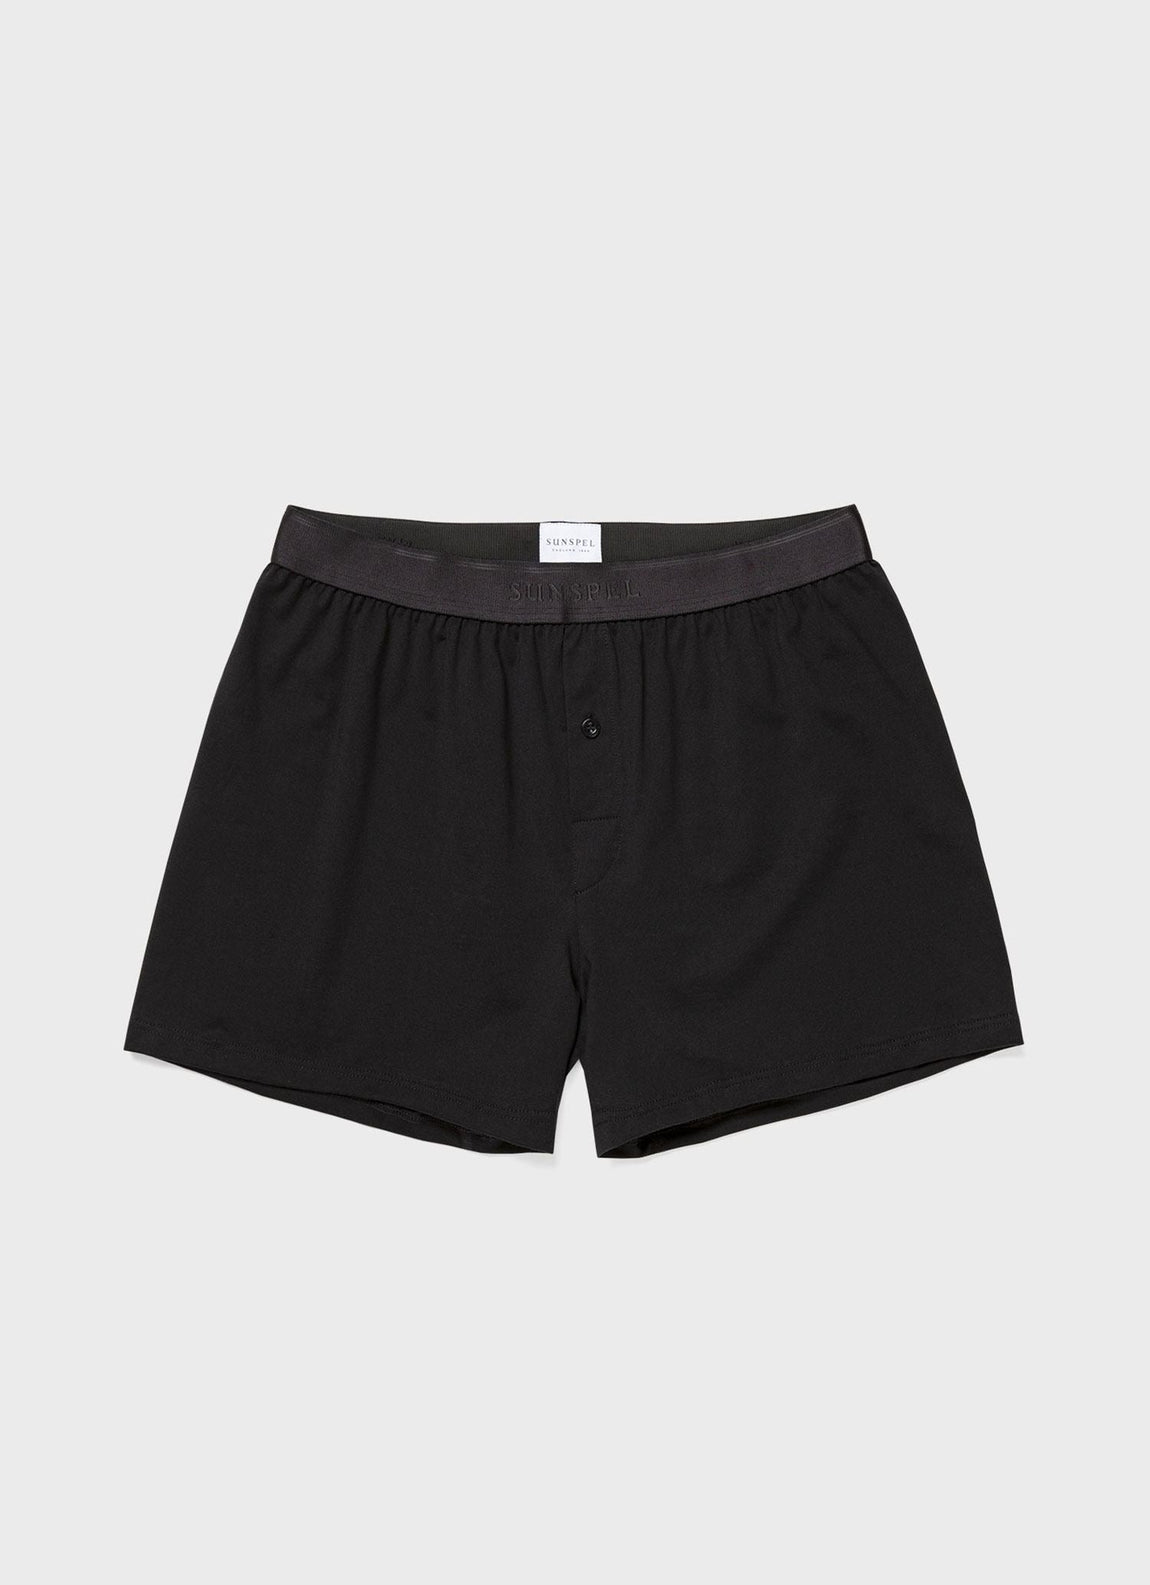 Men's Superfine Cotton One-Button Shorts in Black | Sunspel